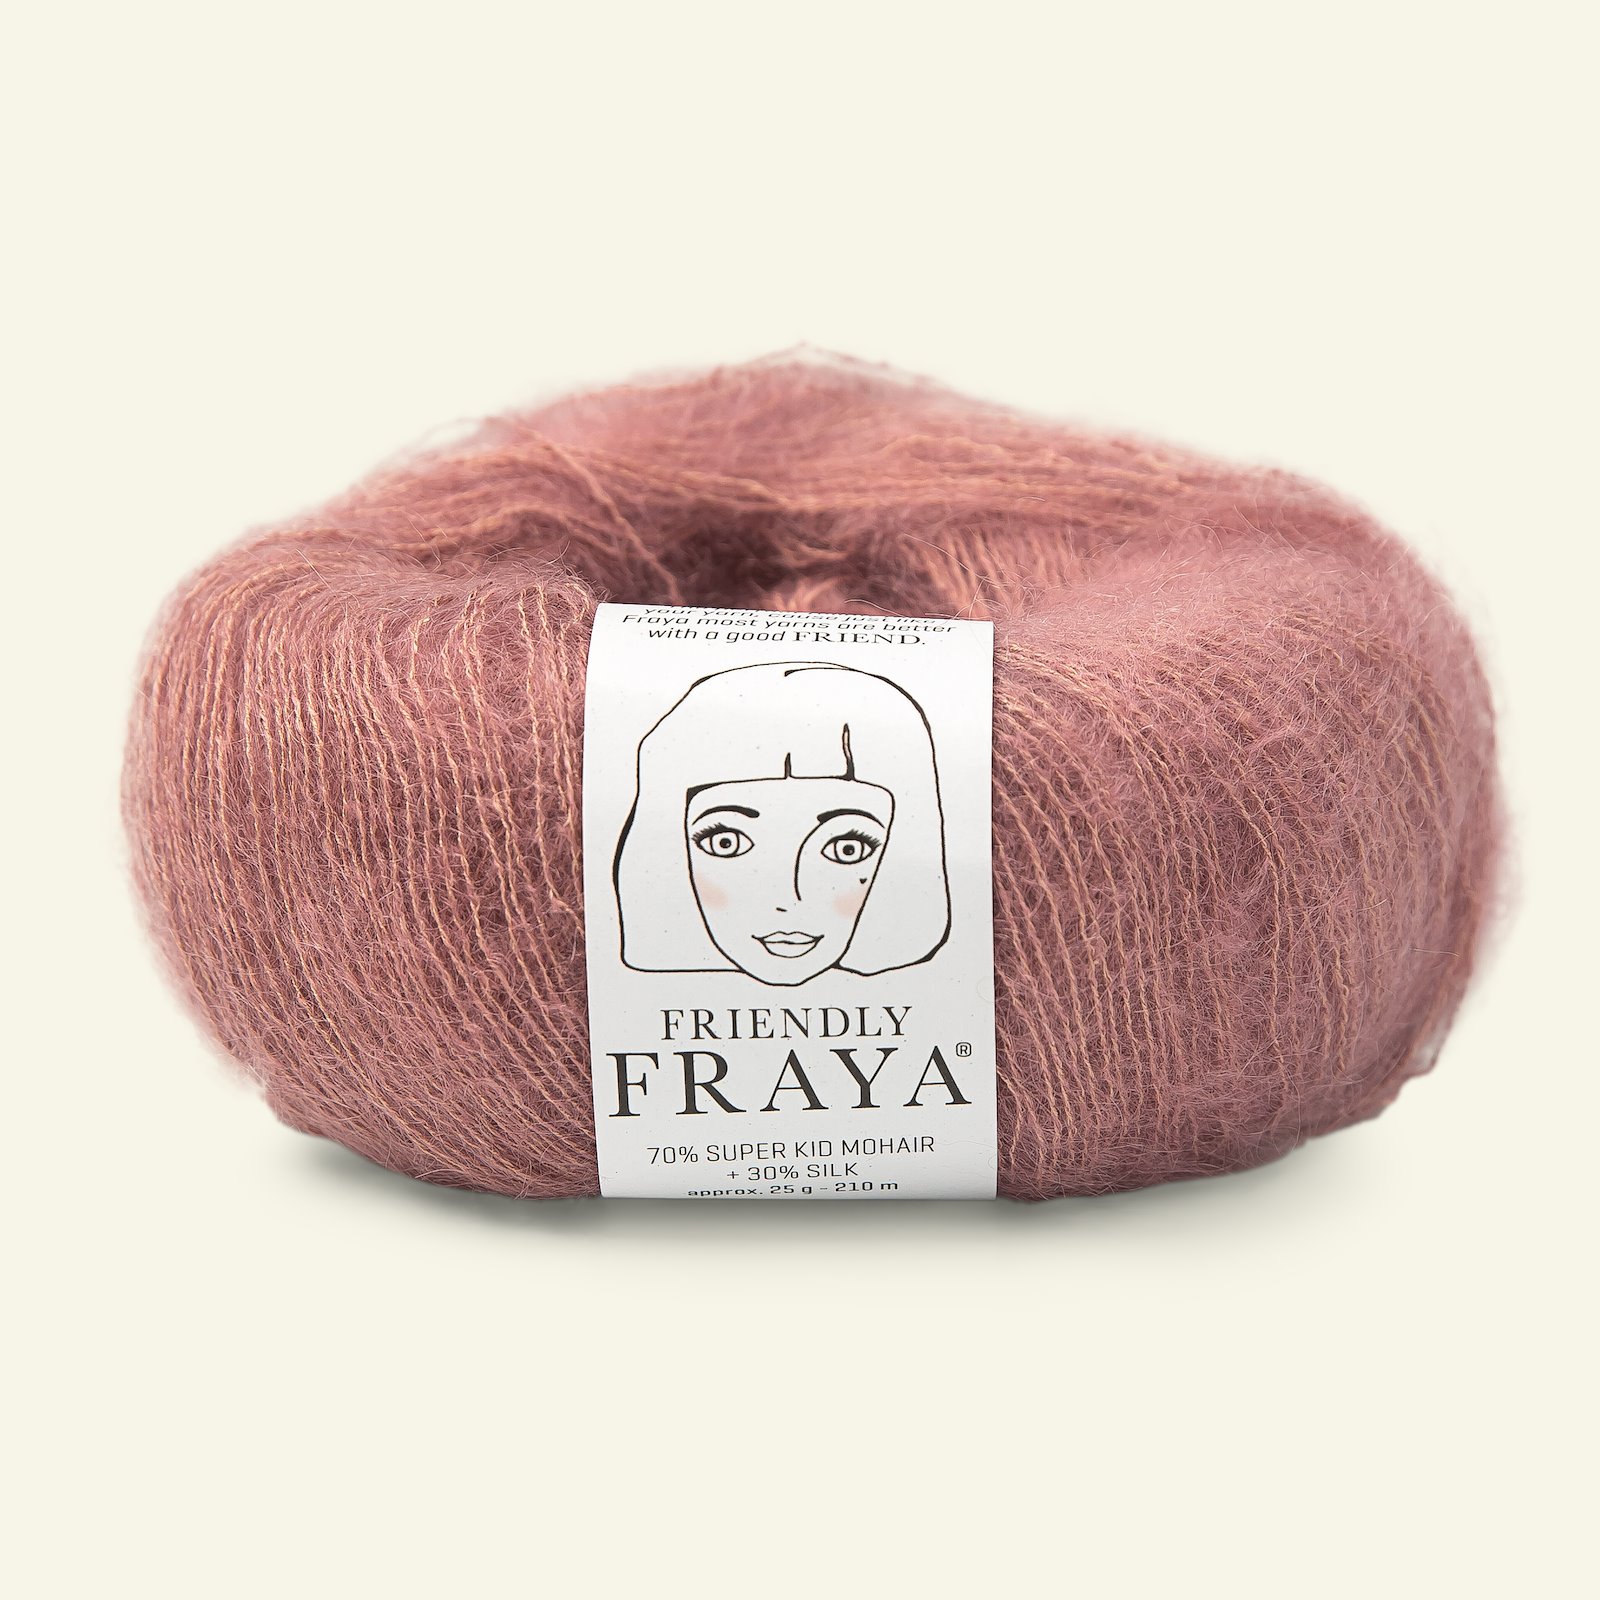 FRAYA, silk mohair garn "Friendly", støvet rosa 90054988_pack